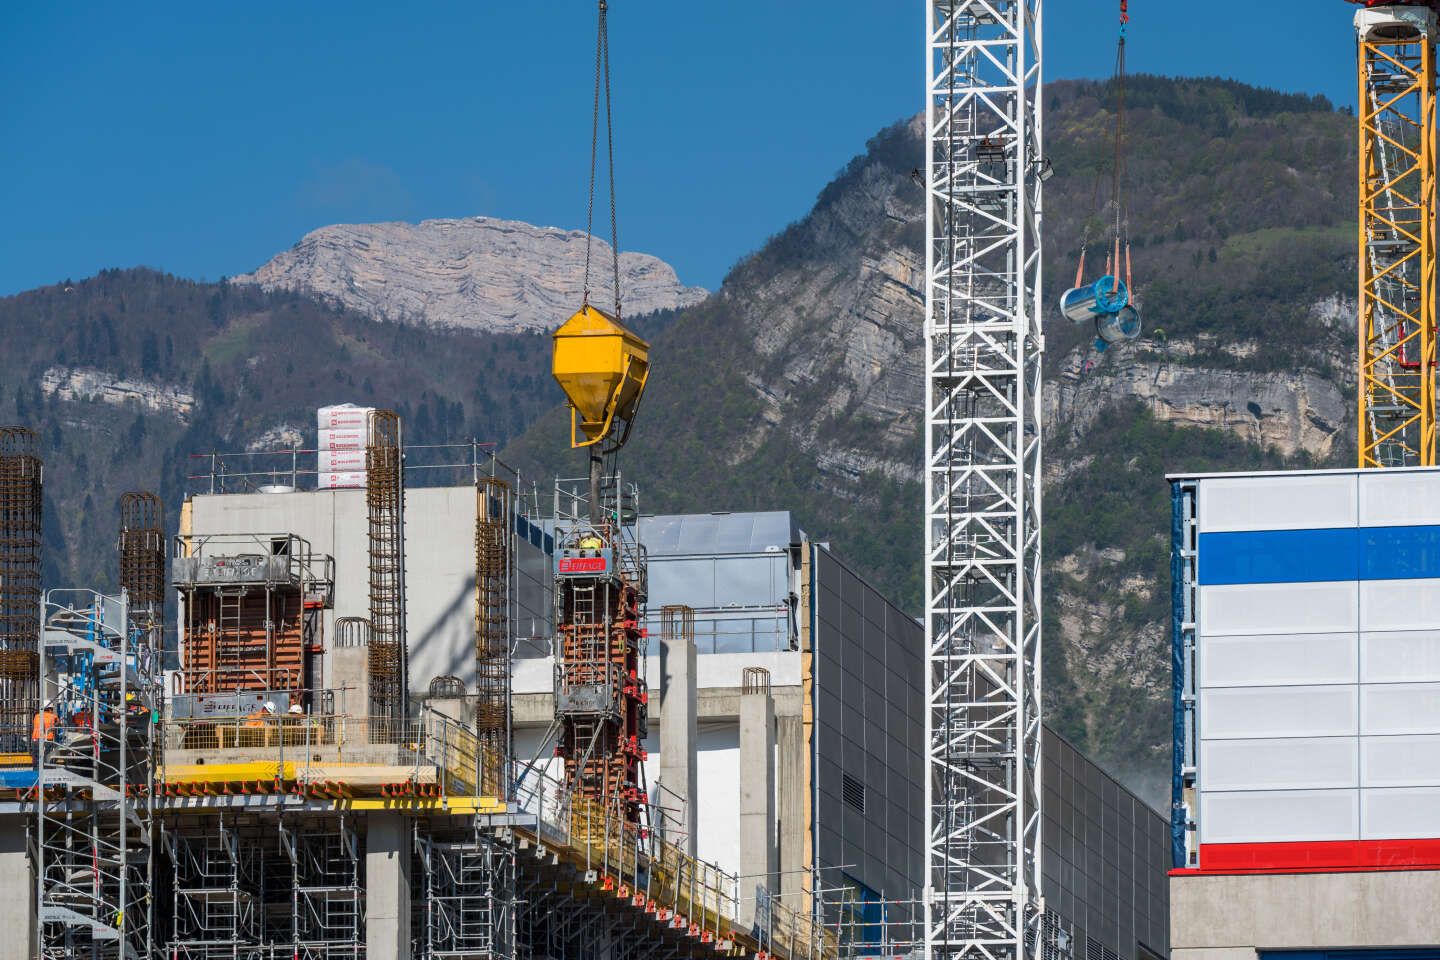 A Grenoble, l’agrandissement de STMicroelectronics relance la question du partage de l’eau